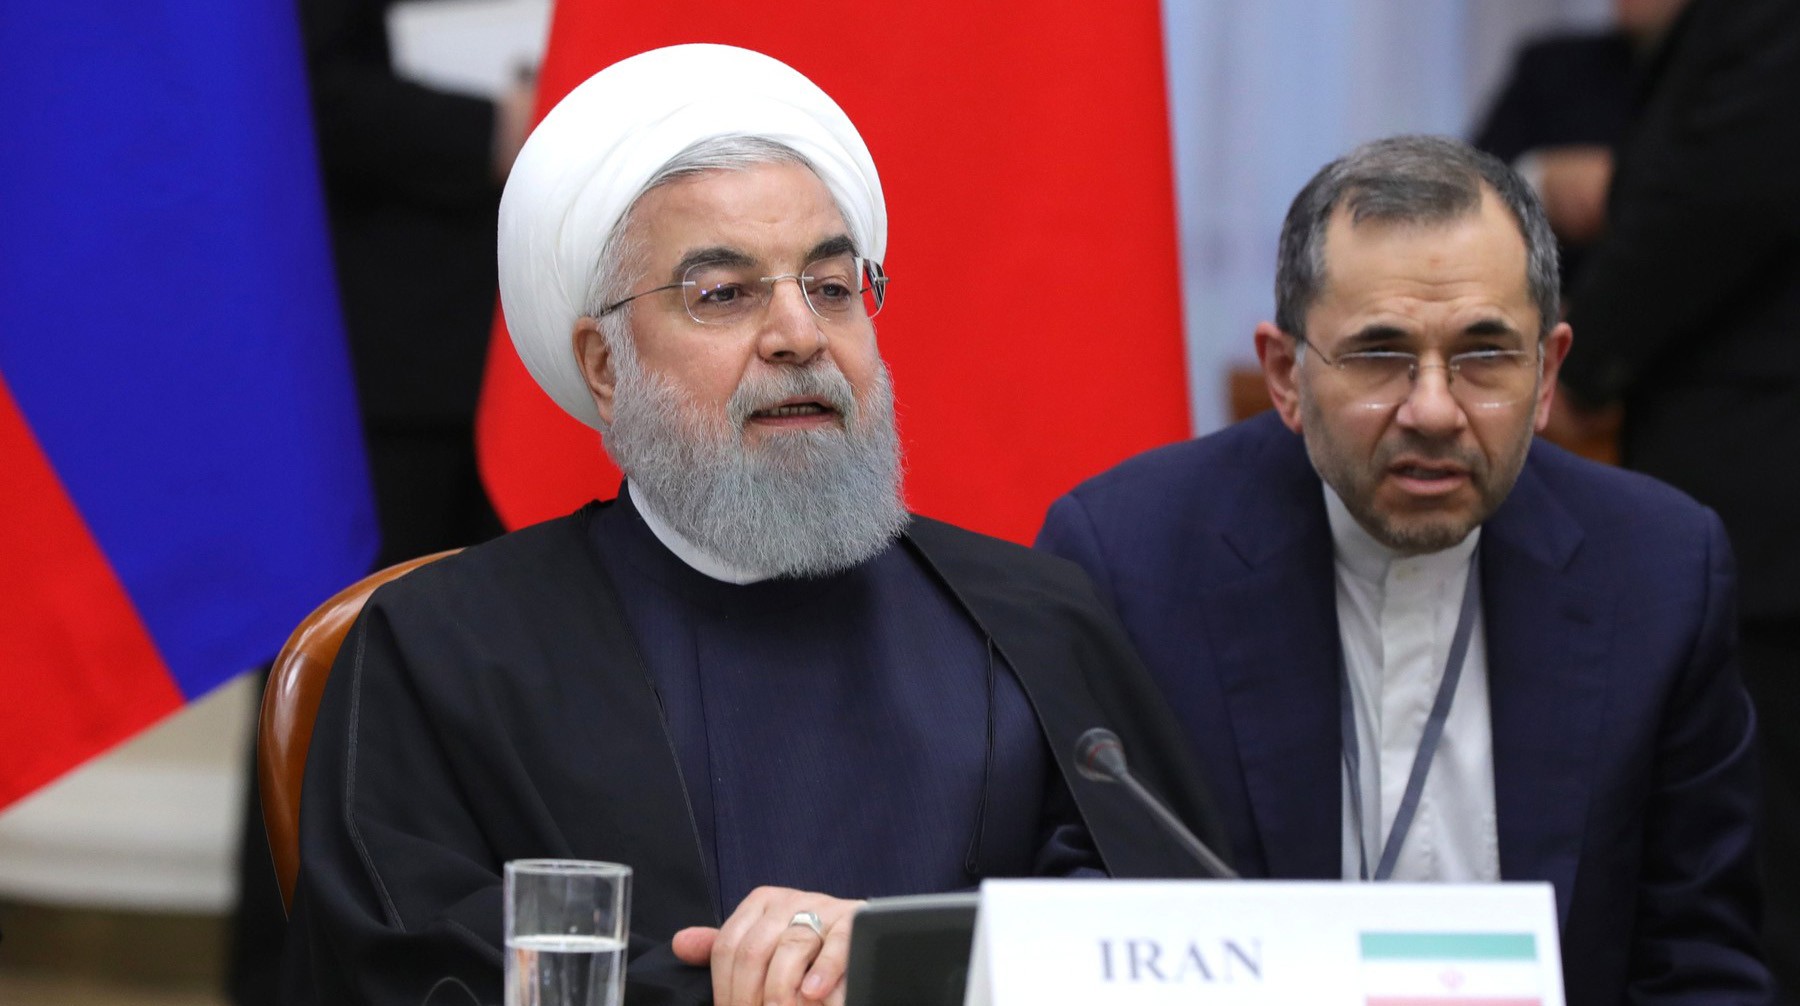 Dailystorm - Иран объявил о втором этапе приостановки обязательств по ядерной сделке